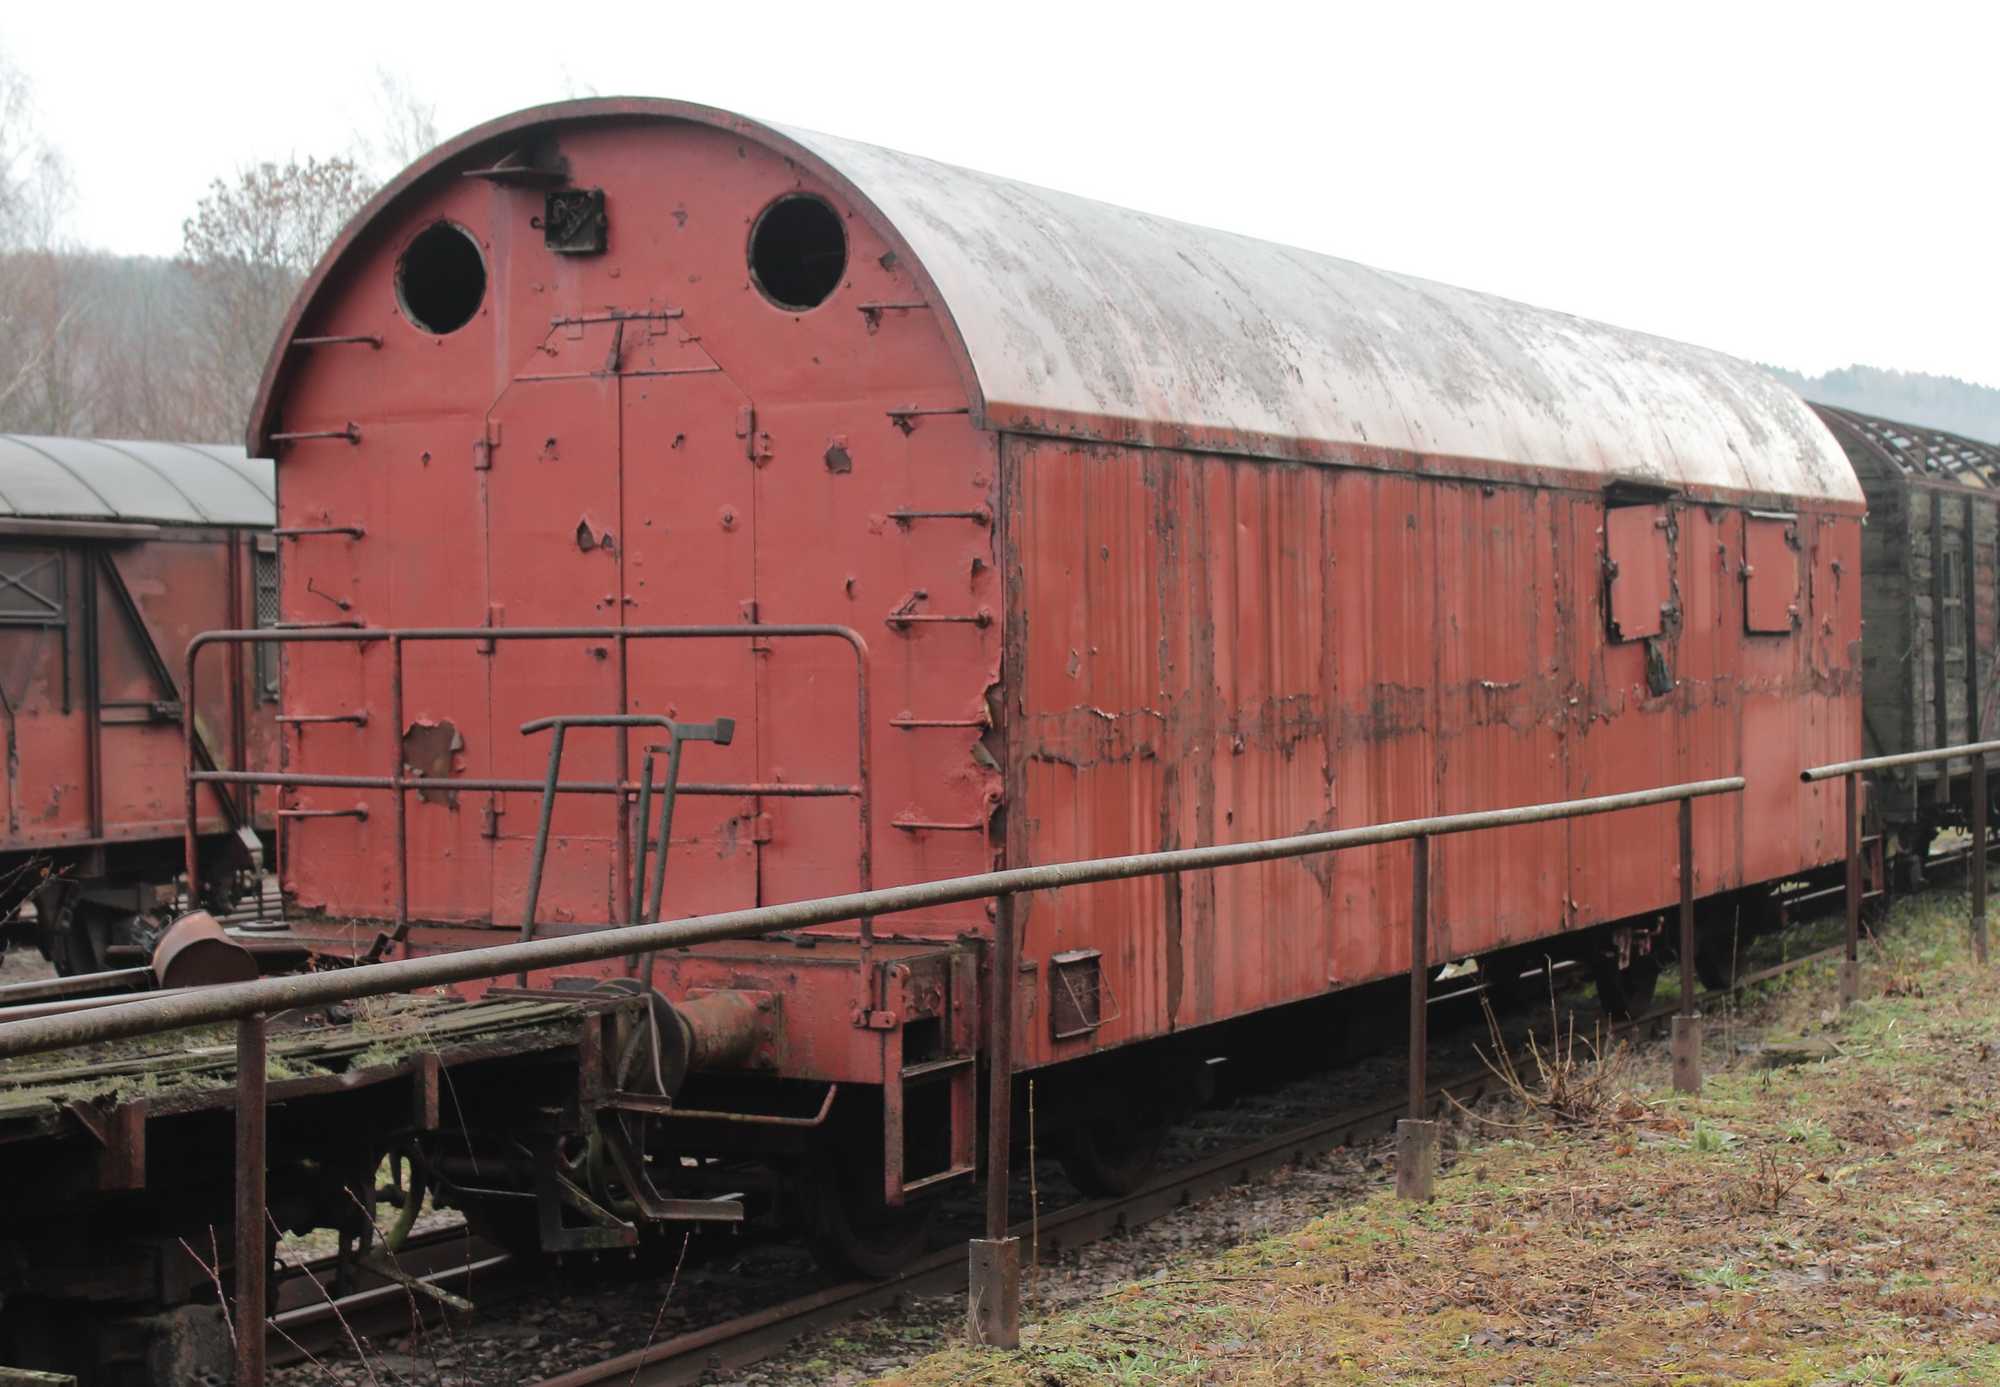 Die Triebwagen der ČSD-Reihe M131.1 kennen viele deutsche Eisenbahnfreunde. Dass der in VSE-Eigentum befindliche Kartuschenwagen des Eisenbahngeschützes „Dora“ im gleichen Werk entstand, ist weniger bekannt.